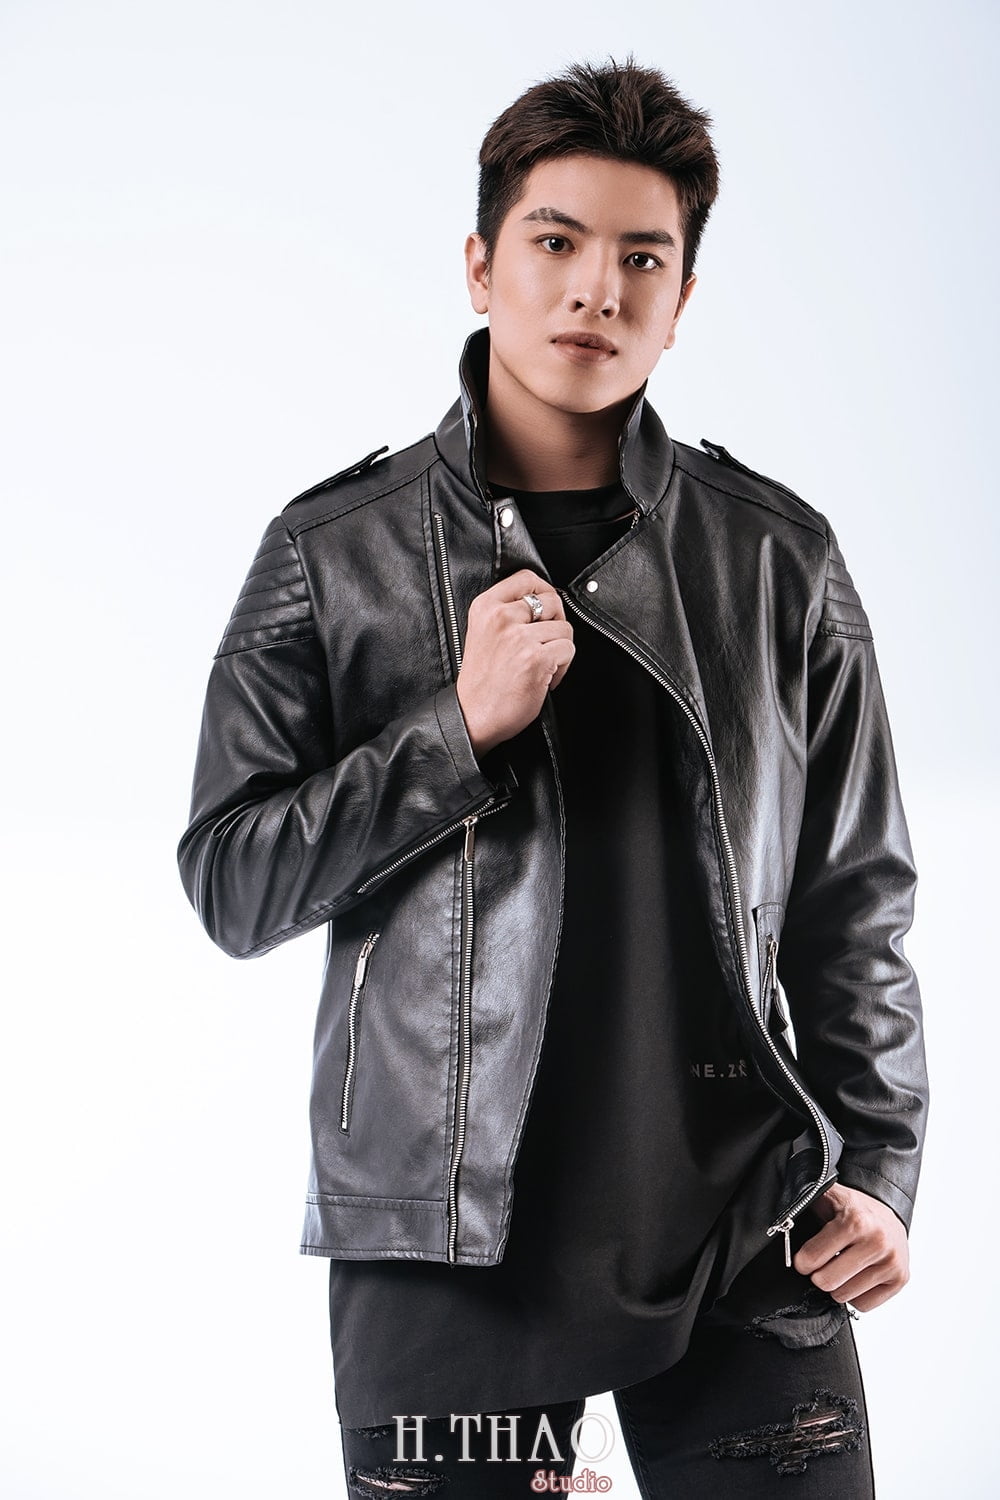 Anh profile style Han Quoc 6 min - #5 Concept chụp ảnh chân dung nam chất lừ tại Tp.HCM – HThao Studio